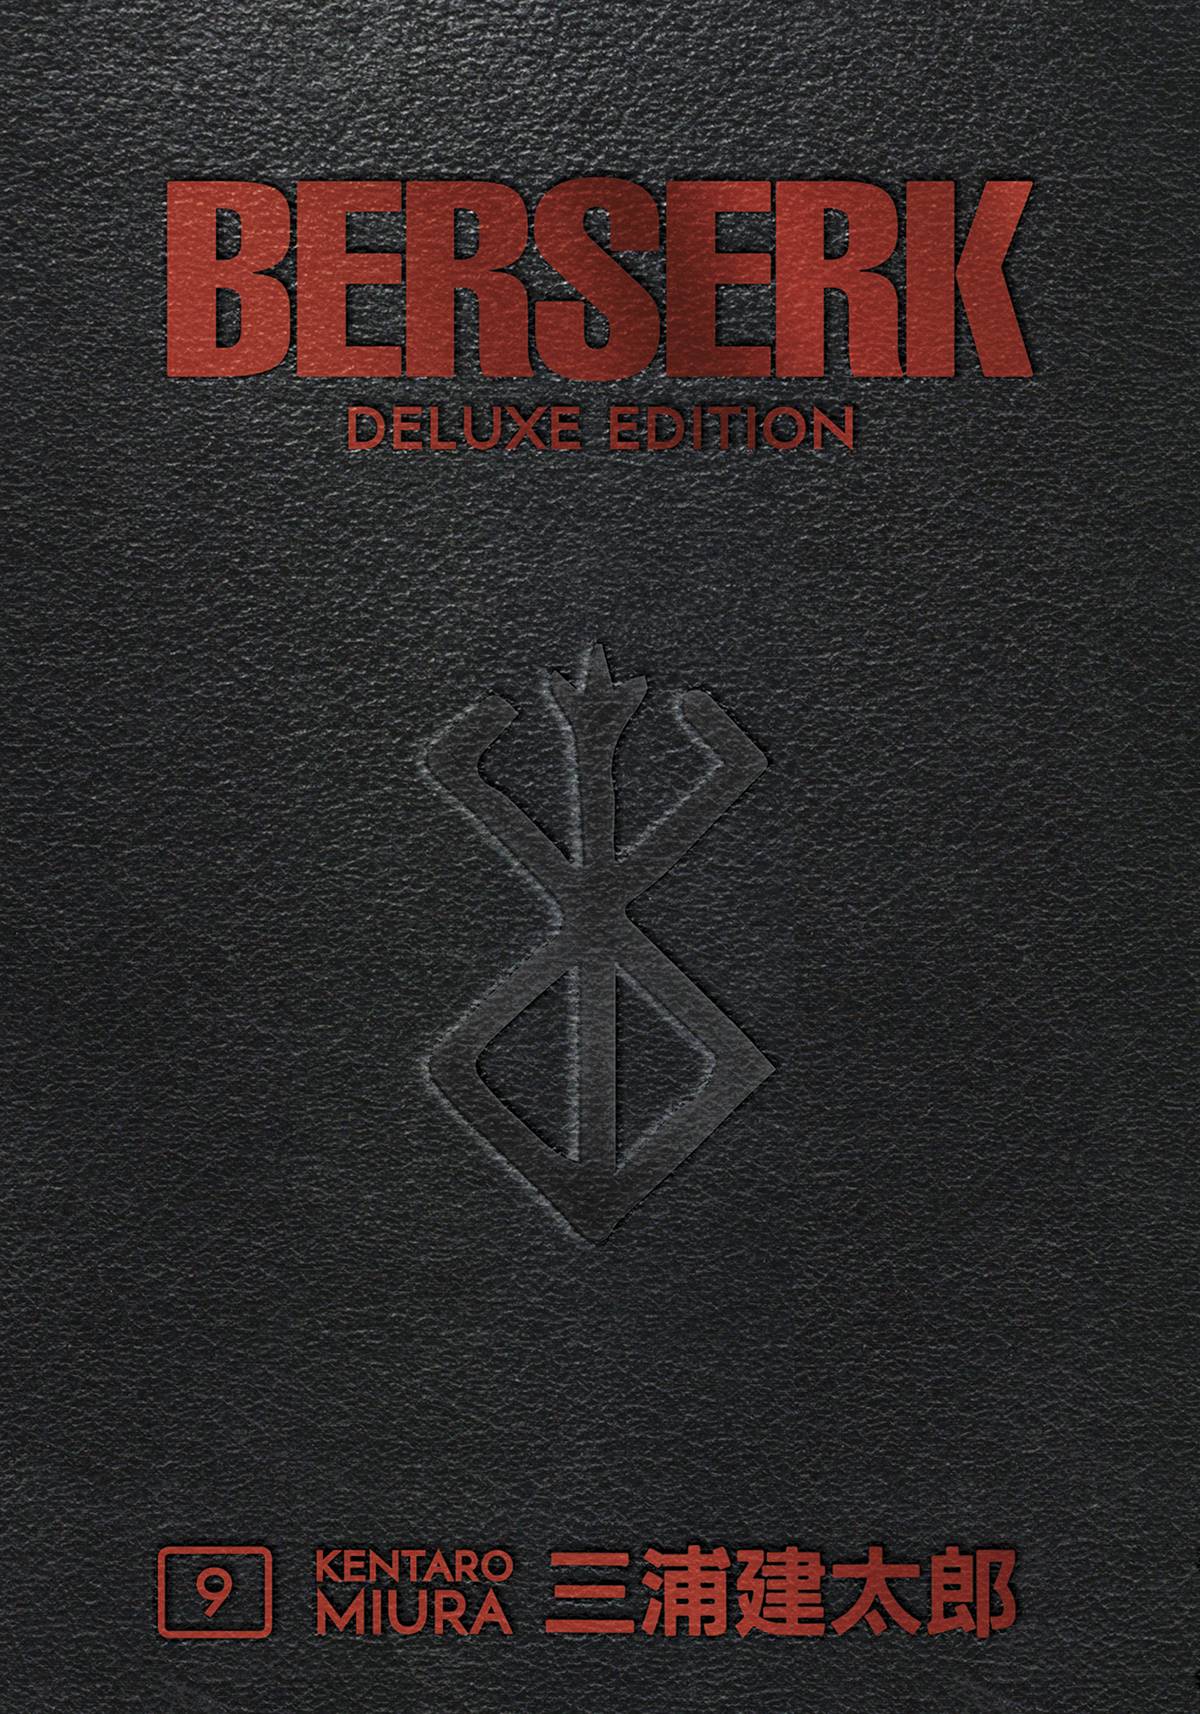 BERSERK DELUXE EDITION HC 09